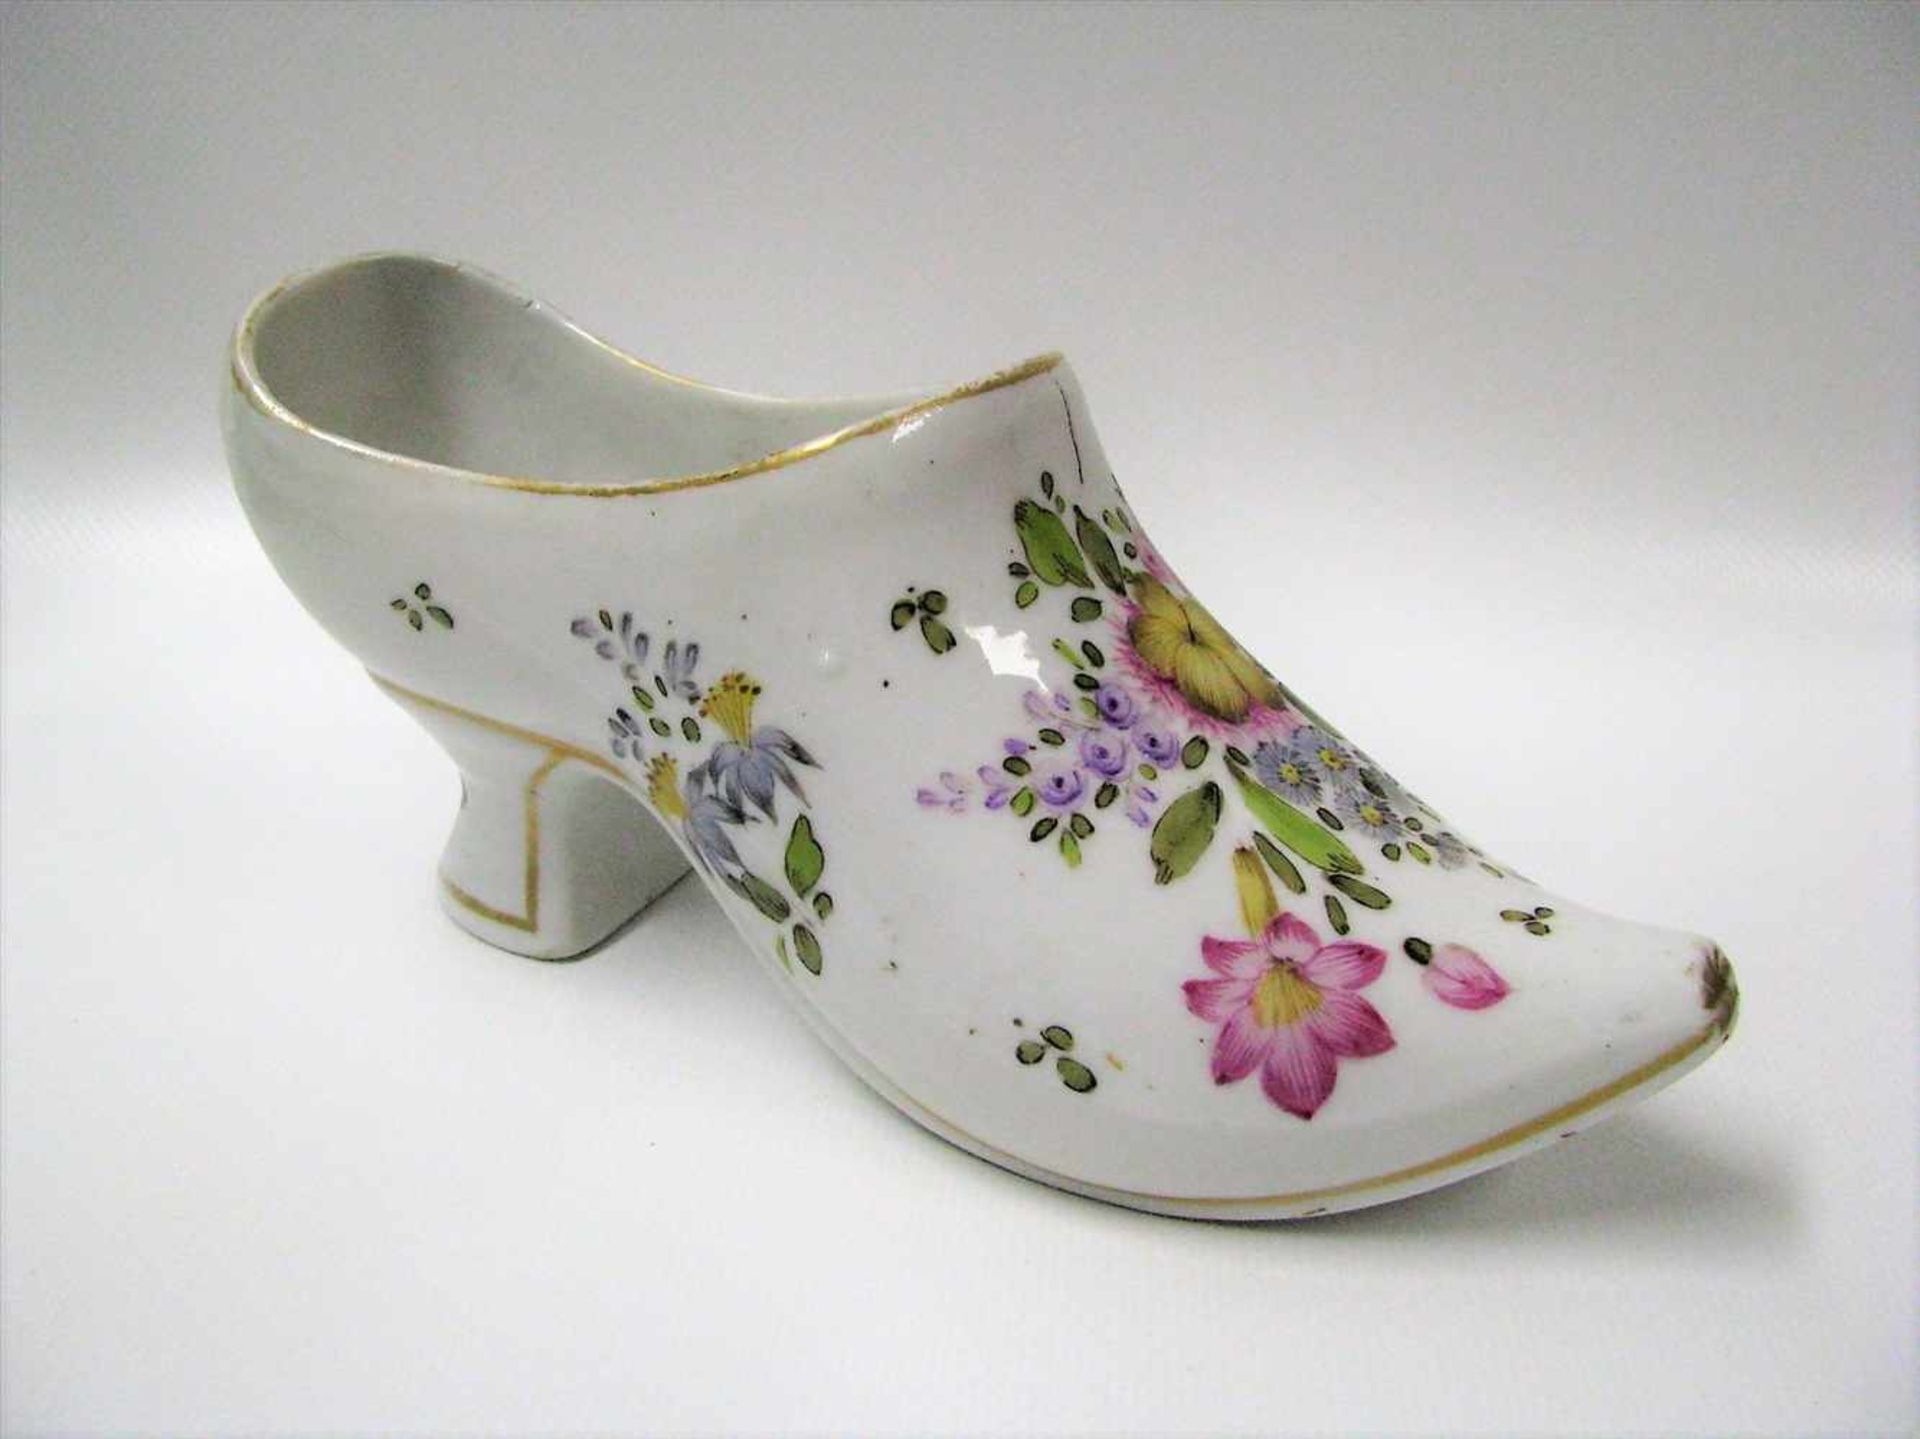 Schale in Form eines Schuhs, 19. Jahrhundert, Weißporzellan mit polychromer Blütenmalerei, 8,5 x 6,5